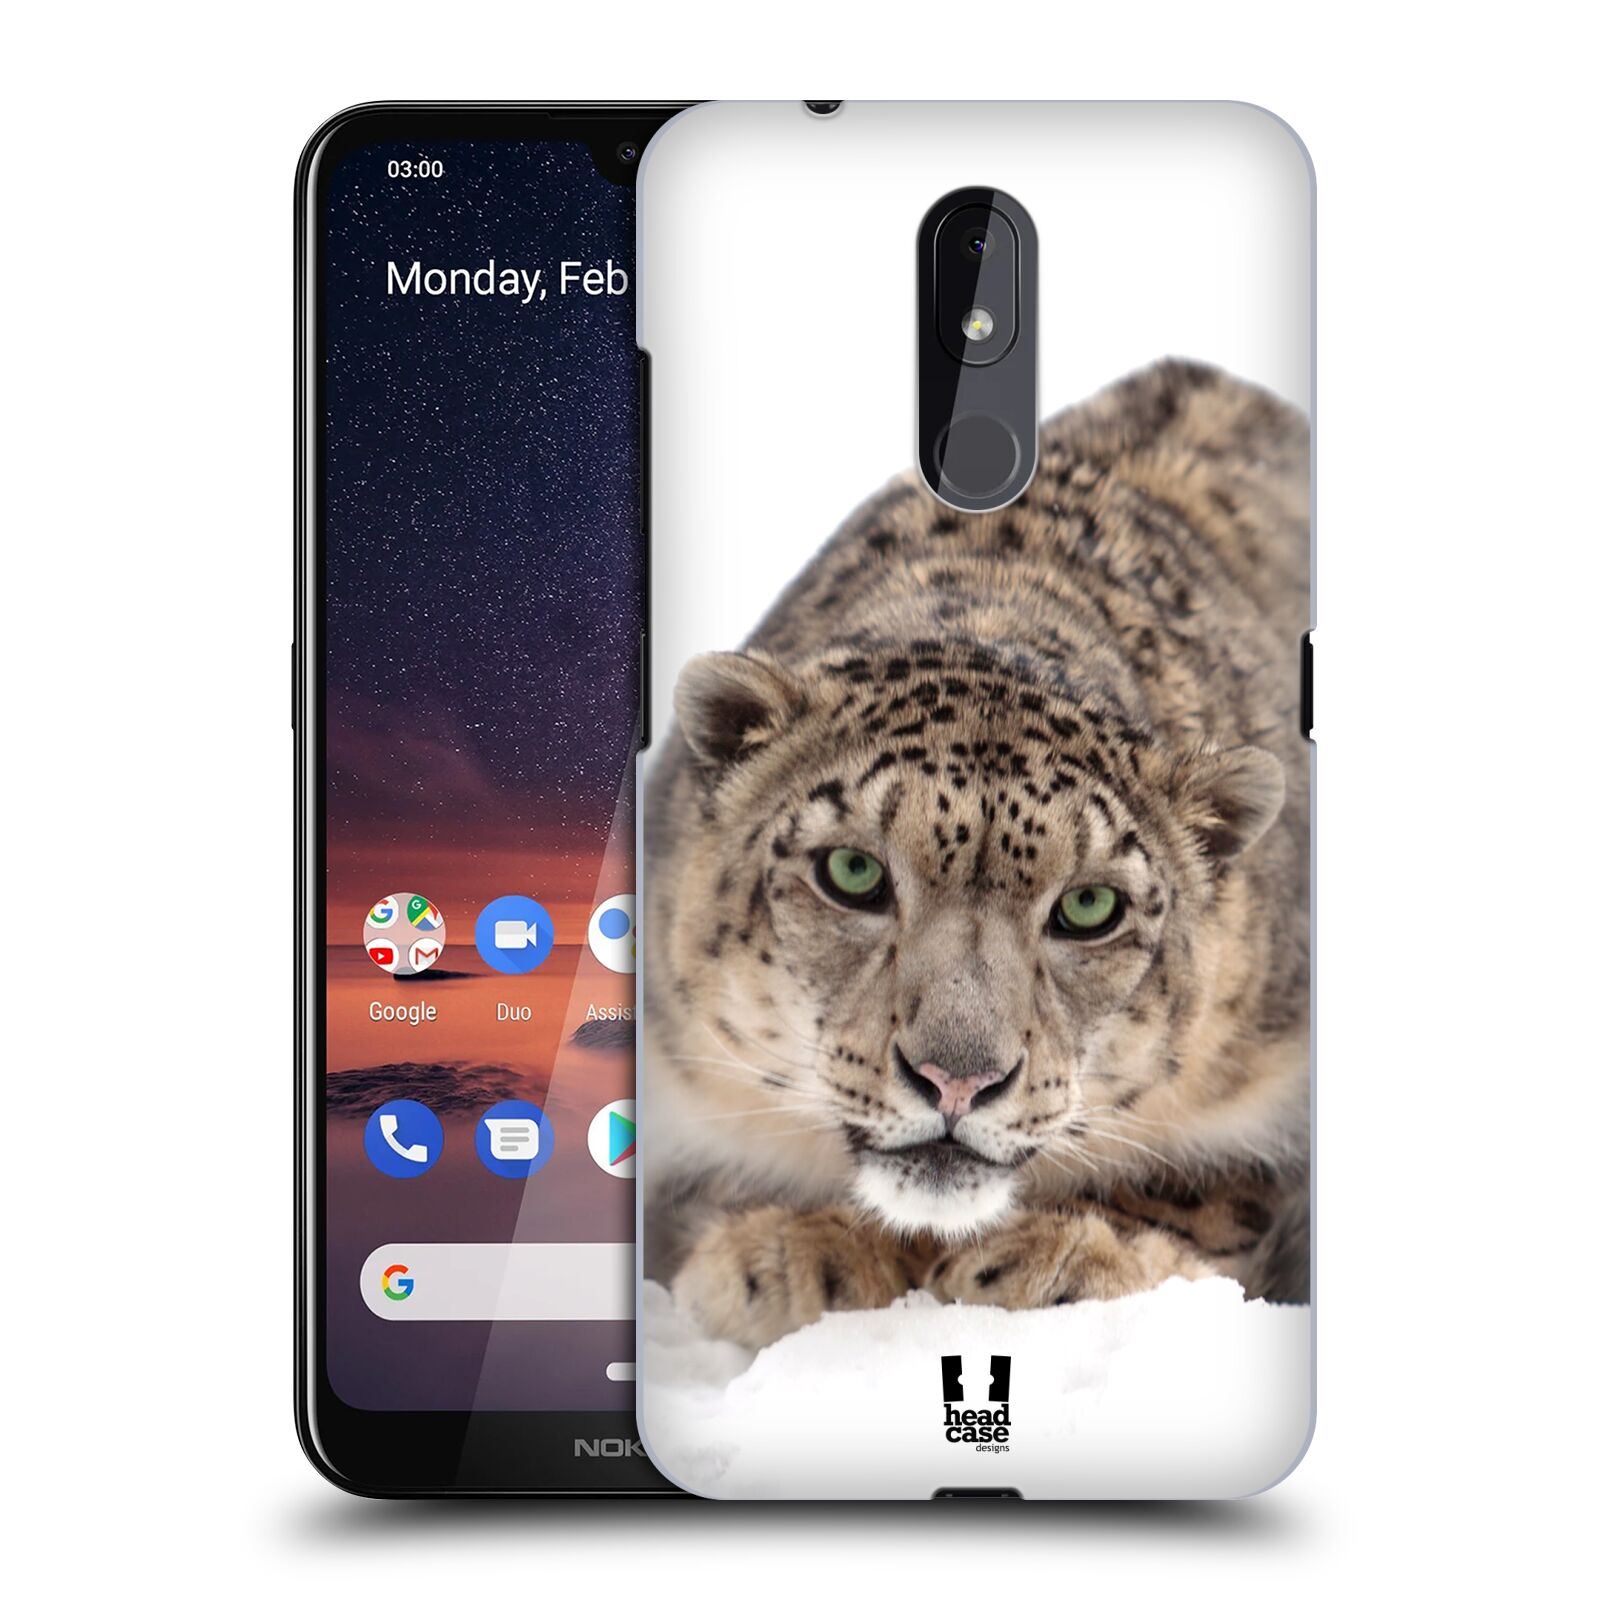 Pouzdro na mobil Nokia 3.2 - HEAD CASE - vzor Divočina, Divoký život a zvířata foto SNĚŽNÝ LEOPARD